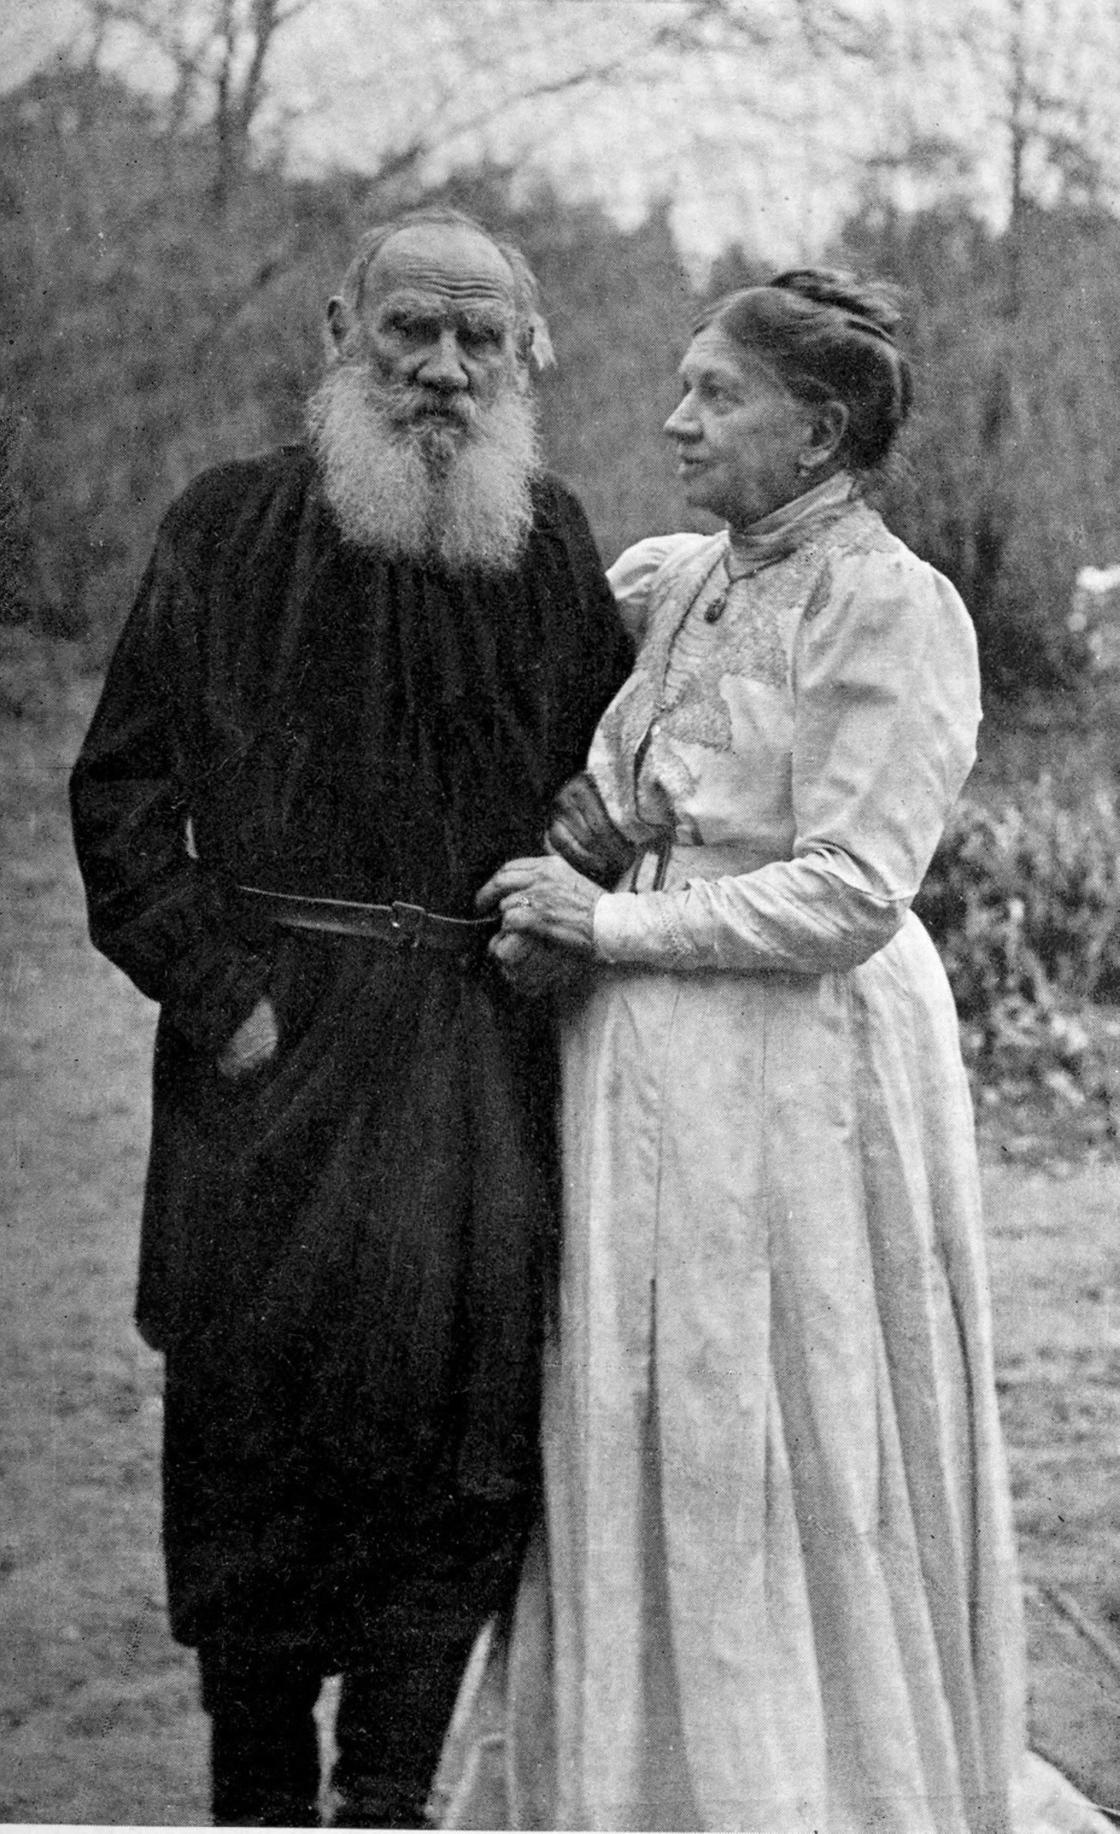 Толстой был женат